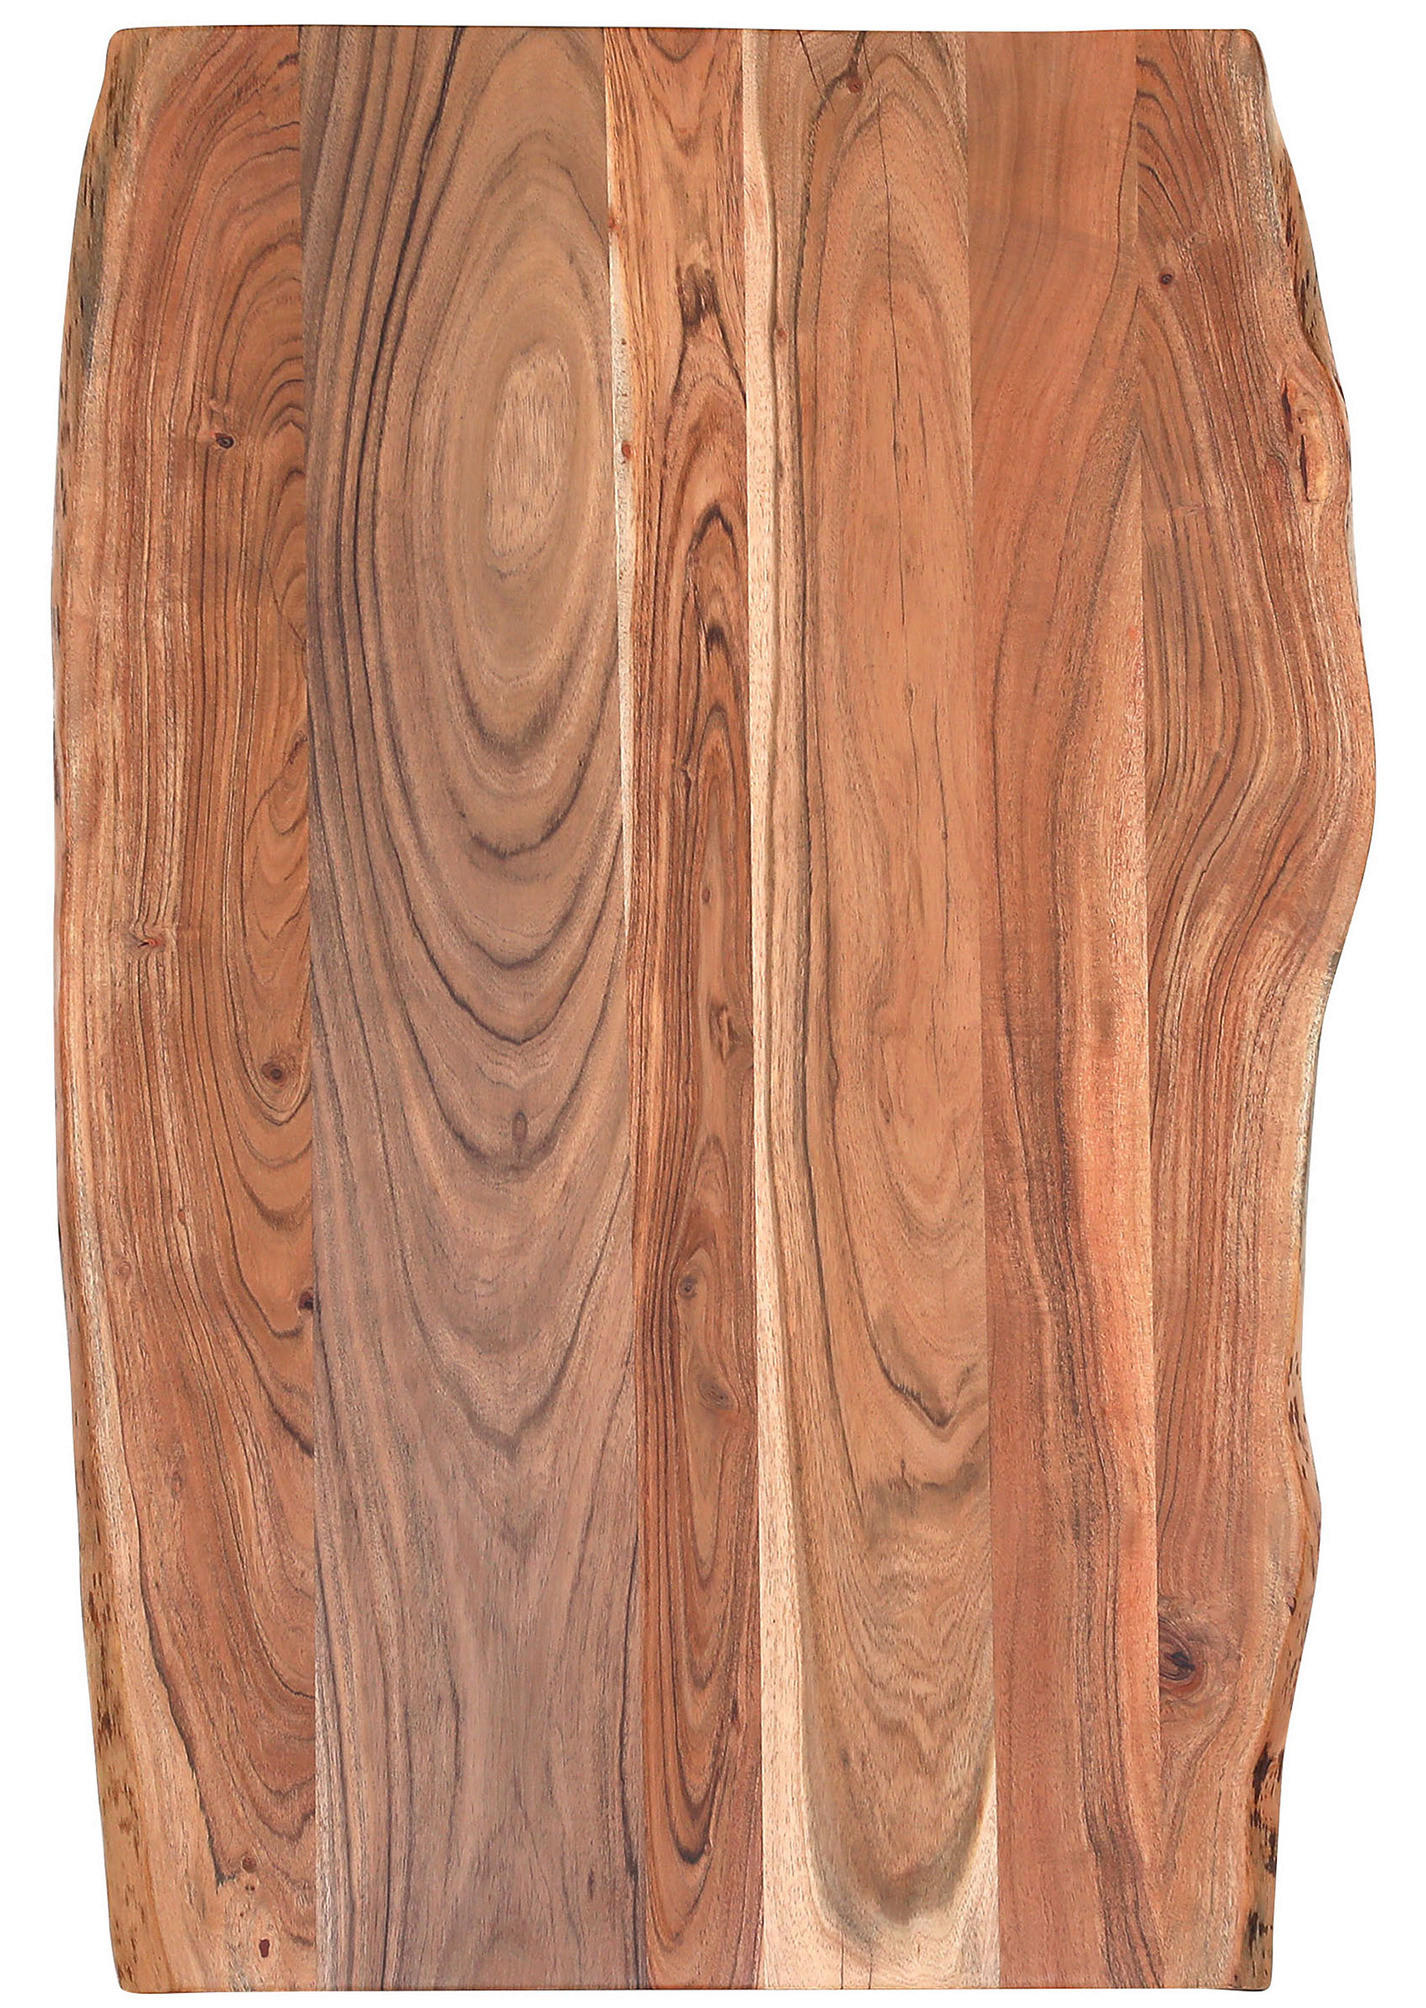 ESSTISCH 140/90/76 cm Akazie massiv Holz Weiß, Akaziefarben rechteckig  - Weiß/Akaziefarben, Design, Holz/Metall (140/90/76cm) - Landscape